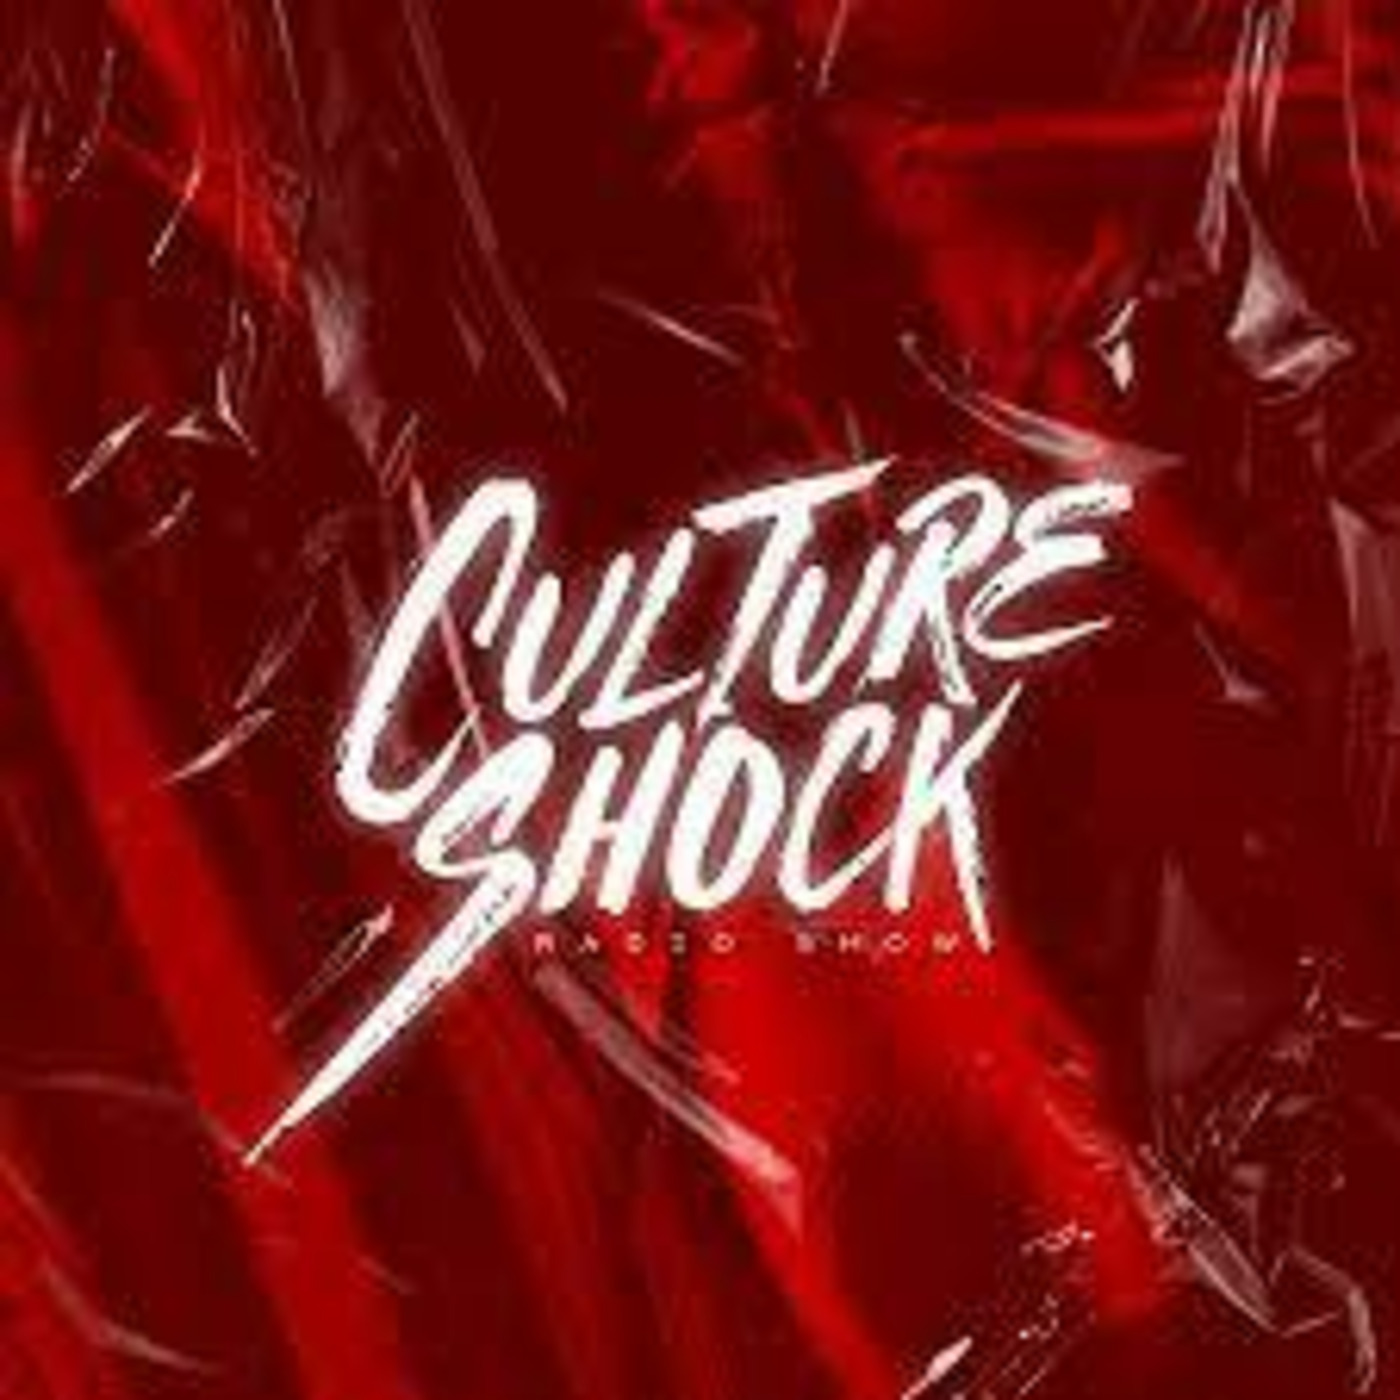 Vintage Culture - Culture Shock 093